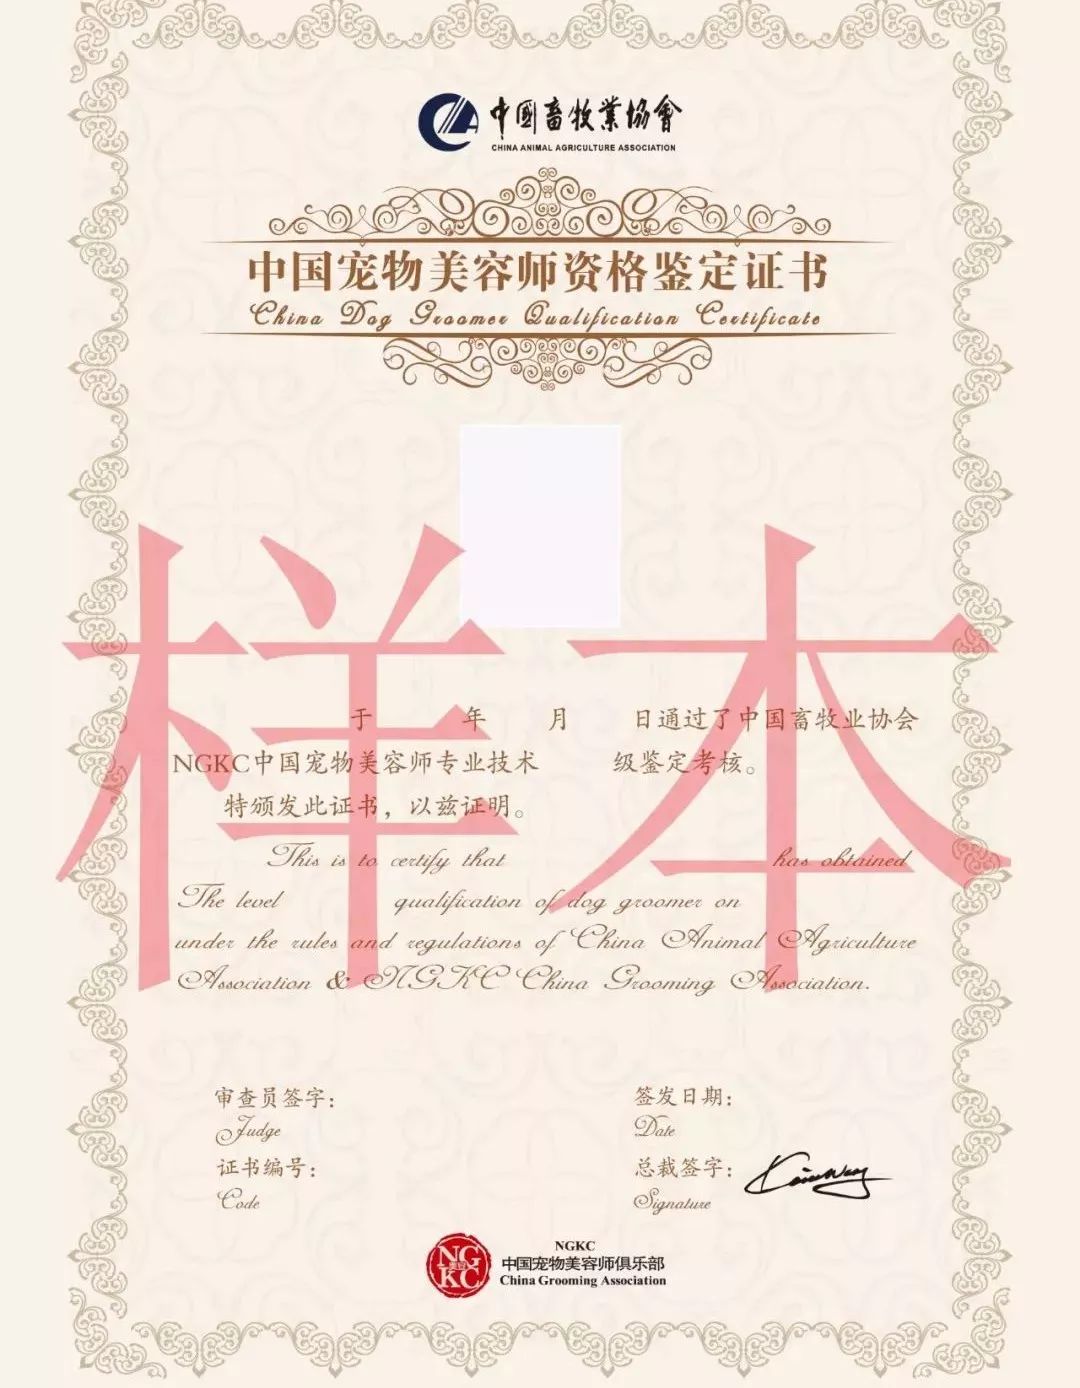 注:在ngkc中国宠物美容师俱乐部指定授权学校中学习的学员,申请结业证